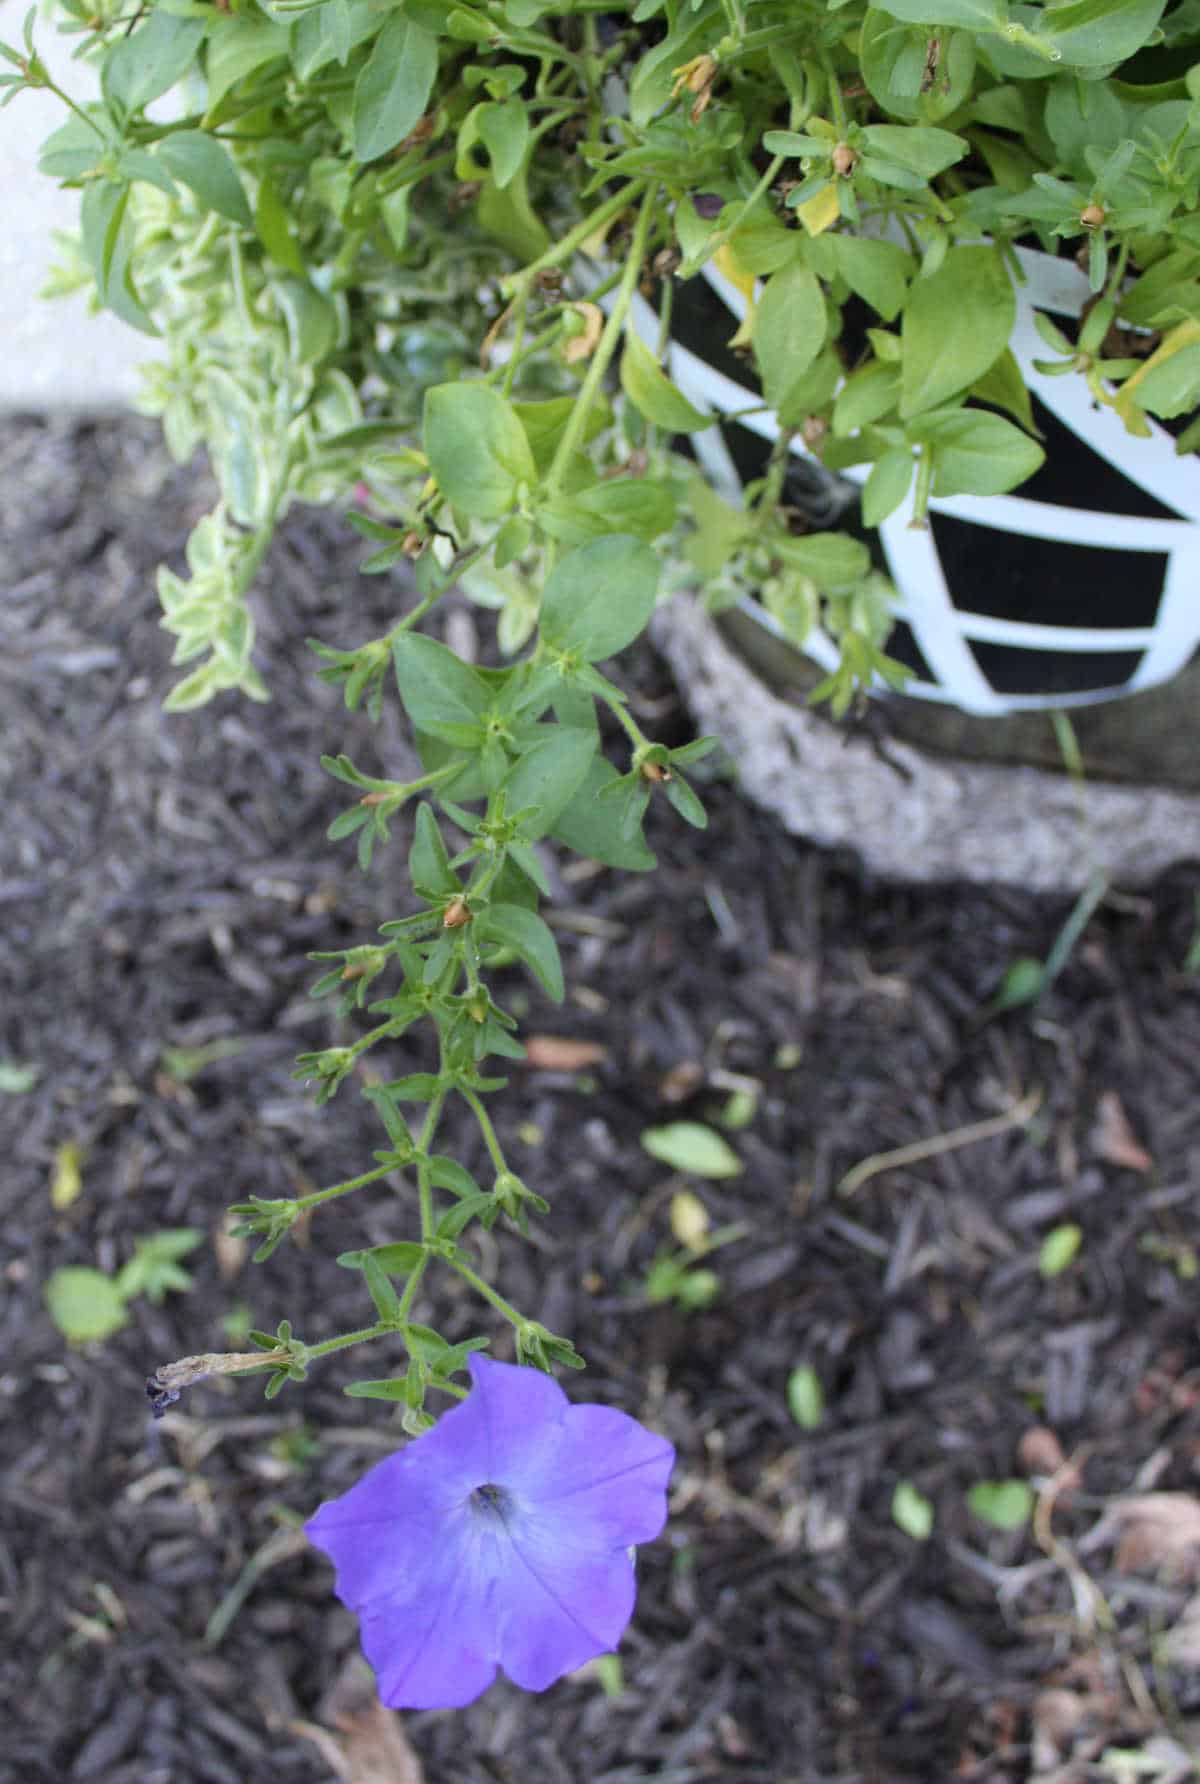 a leggy petunia stem